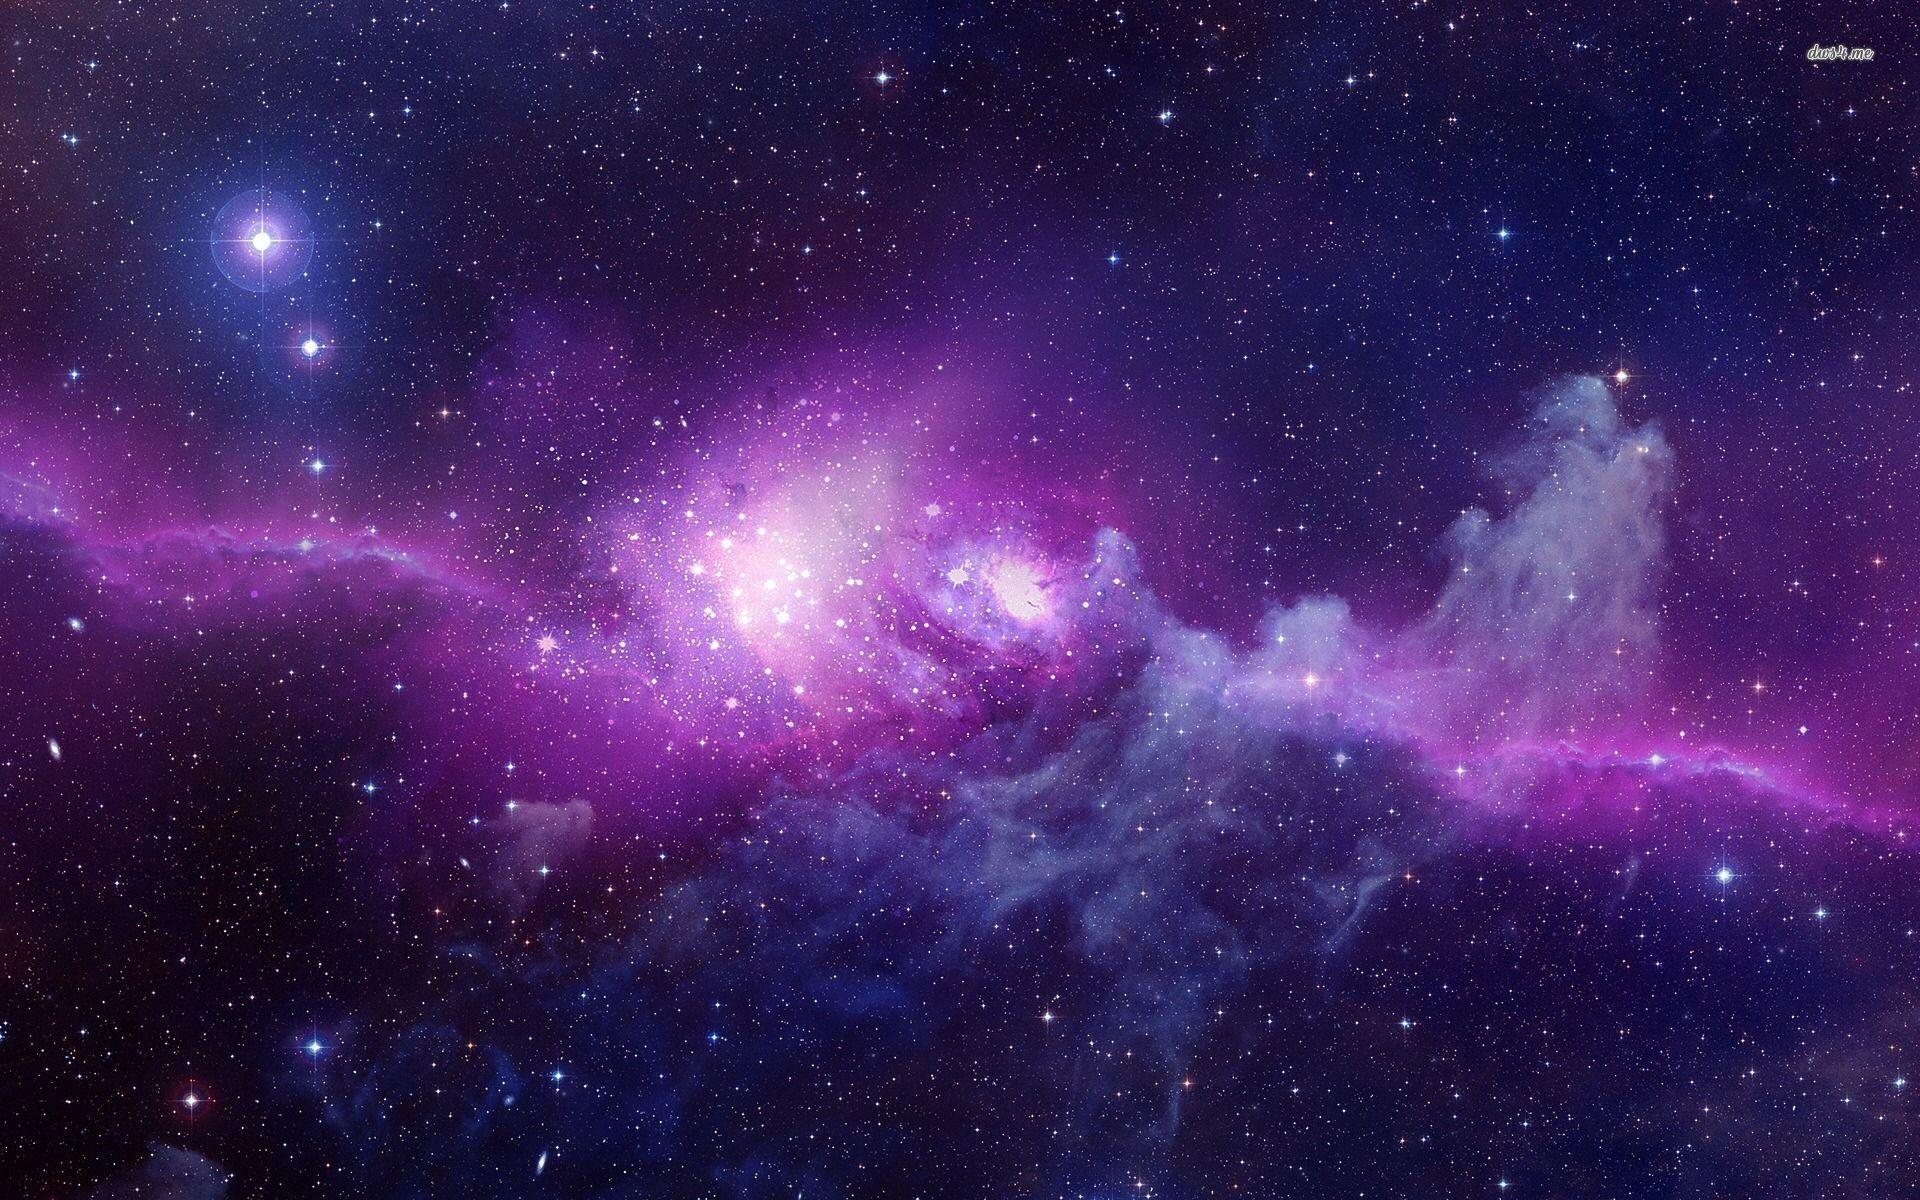 Sự khác biệt được tạo ra từ hình nền thiên hà này sẽ làm cho chiếc máy tính của bạn trở nên độc đáo và phong cách hơn bao giờ hết. Hãy thử riêng mình trải nghiệm bức tranh tuyệt đẹp này, từng cung bậc thăng trầm của bầu trời đêm và tận hưởng vẻ đẹp của thiên nhiên tuyệt vời.